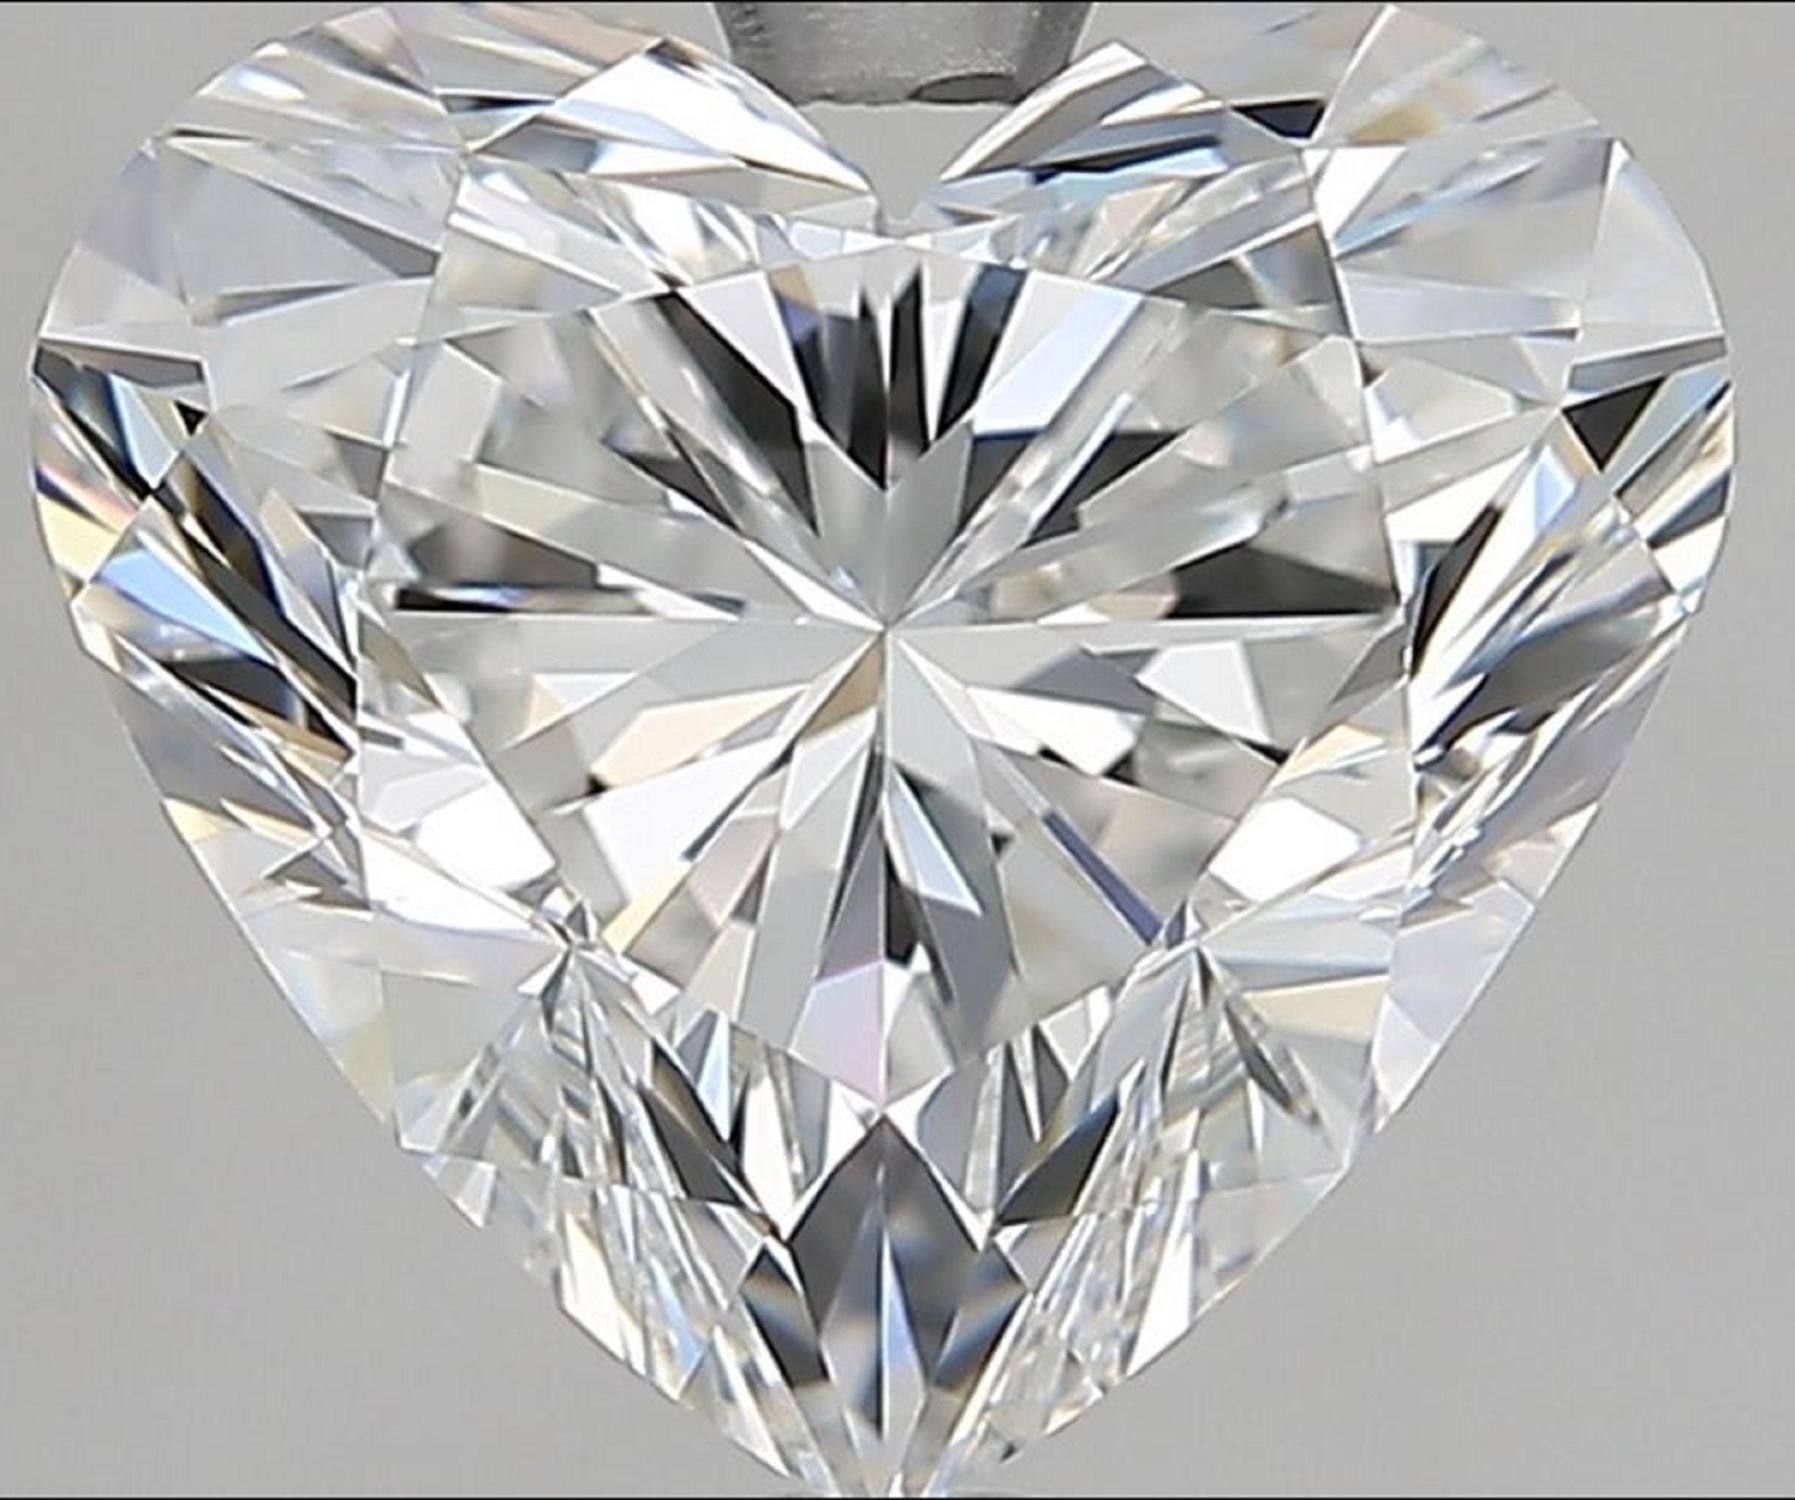 Bague en forme de cœur de 10 carats certifiée GIA, véritable symbole de l'amour éternel et d'une beauté inégalée. En son cœur se trouve un magnifique diamant de 10 carats, certifié par le GIA pour sa qualité exceptionnelle et son authenticité. D'une